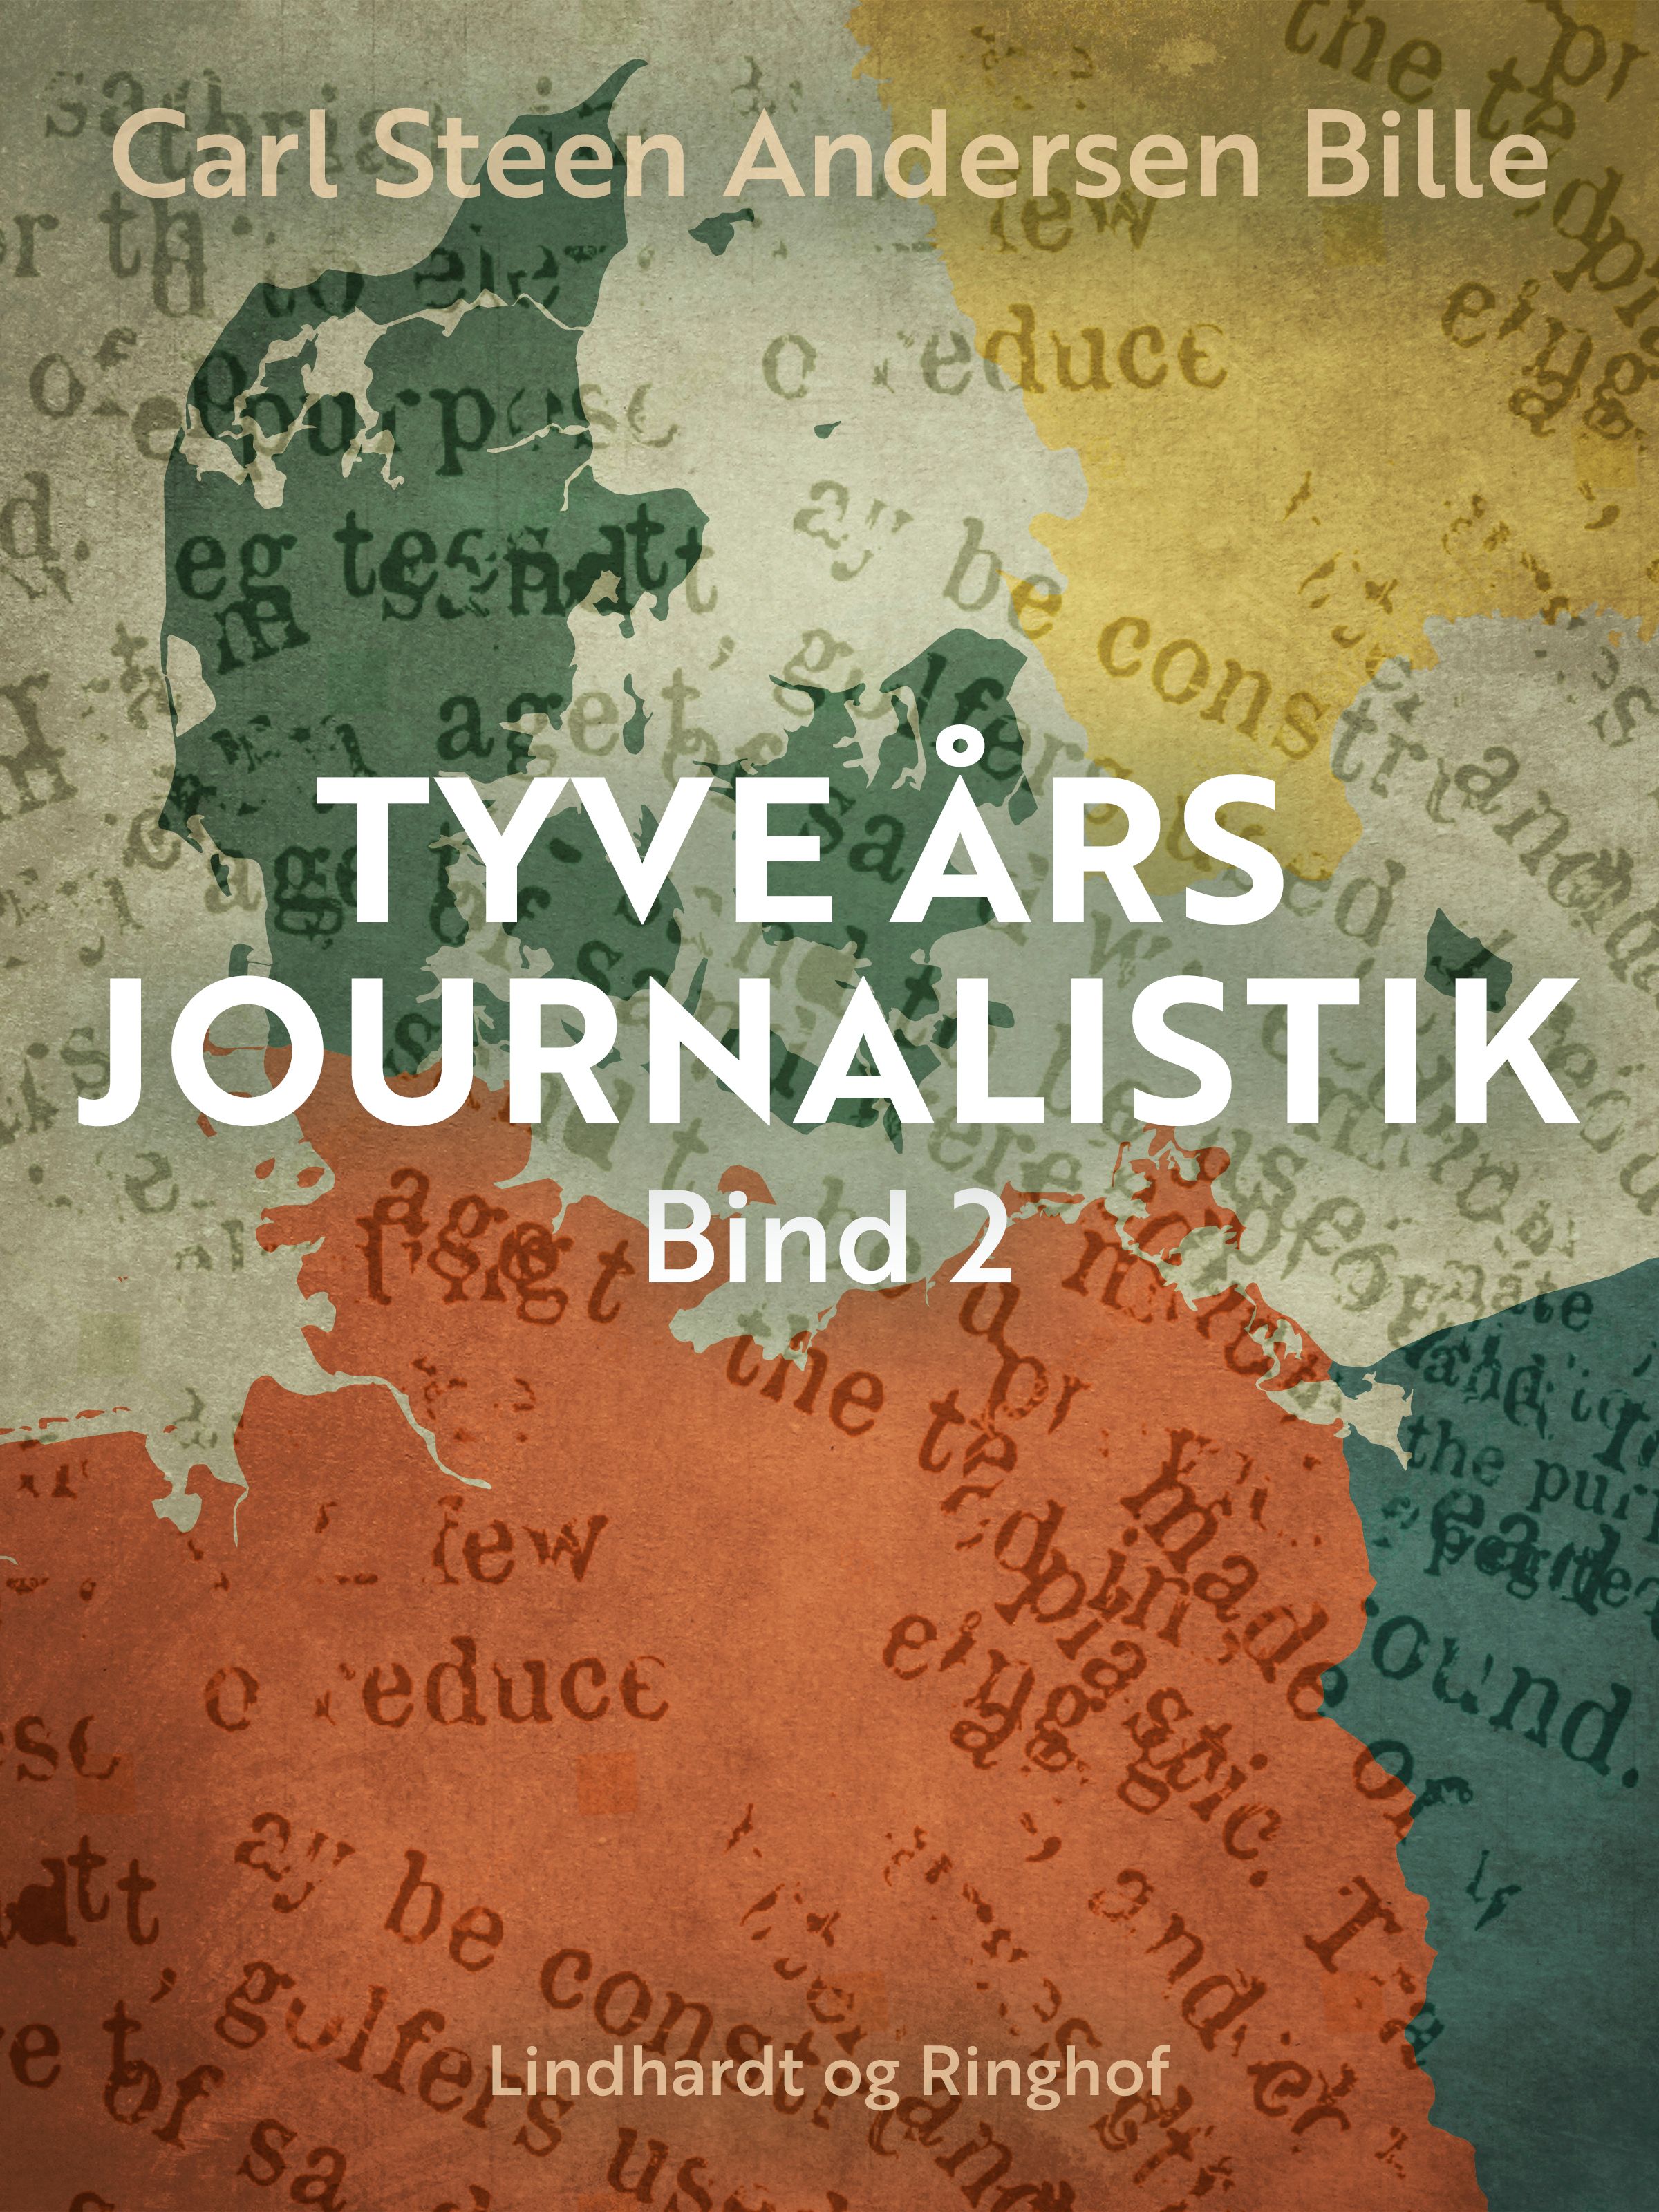 Tyve års journalistik. Bind 2, eBook by Carl Steen Andersen Bille